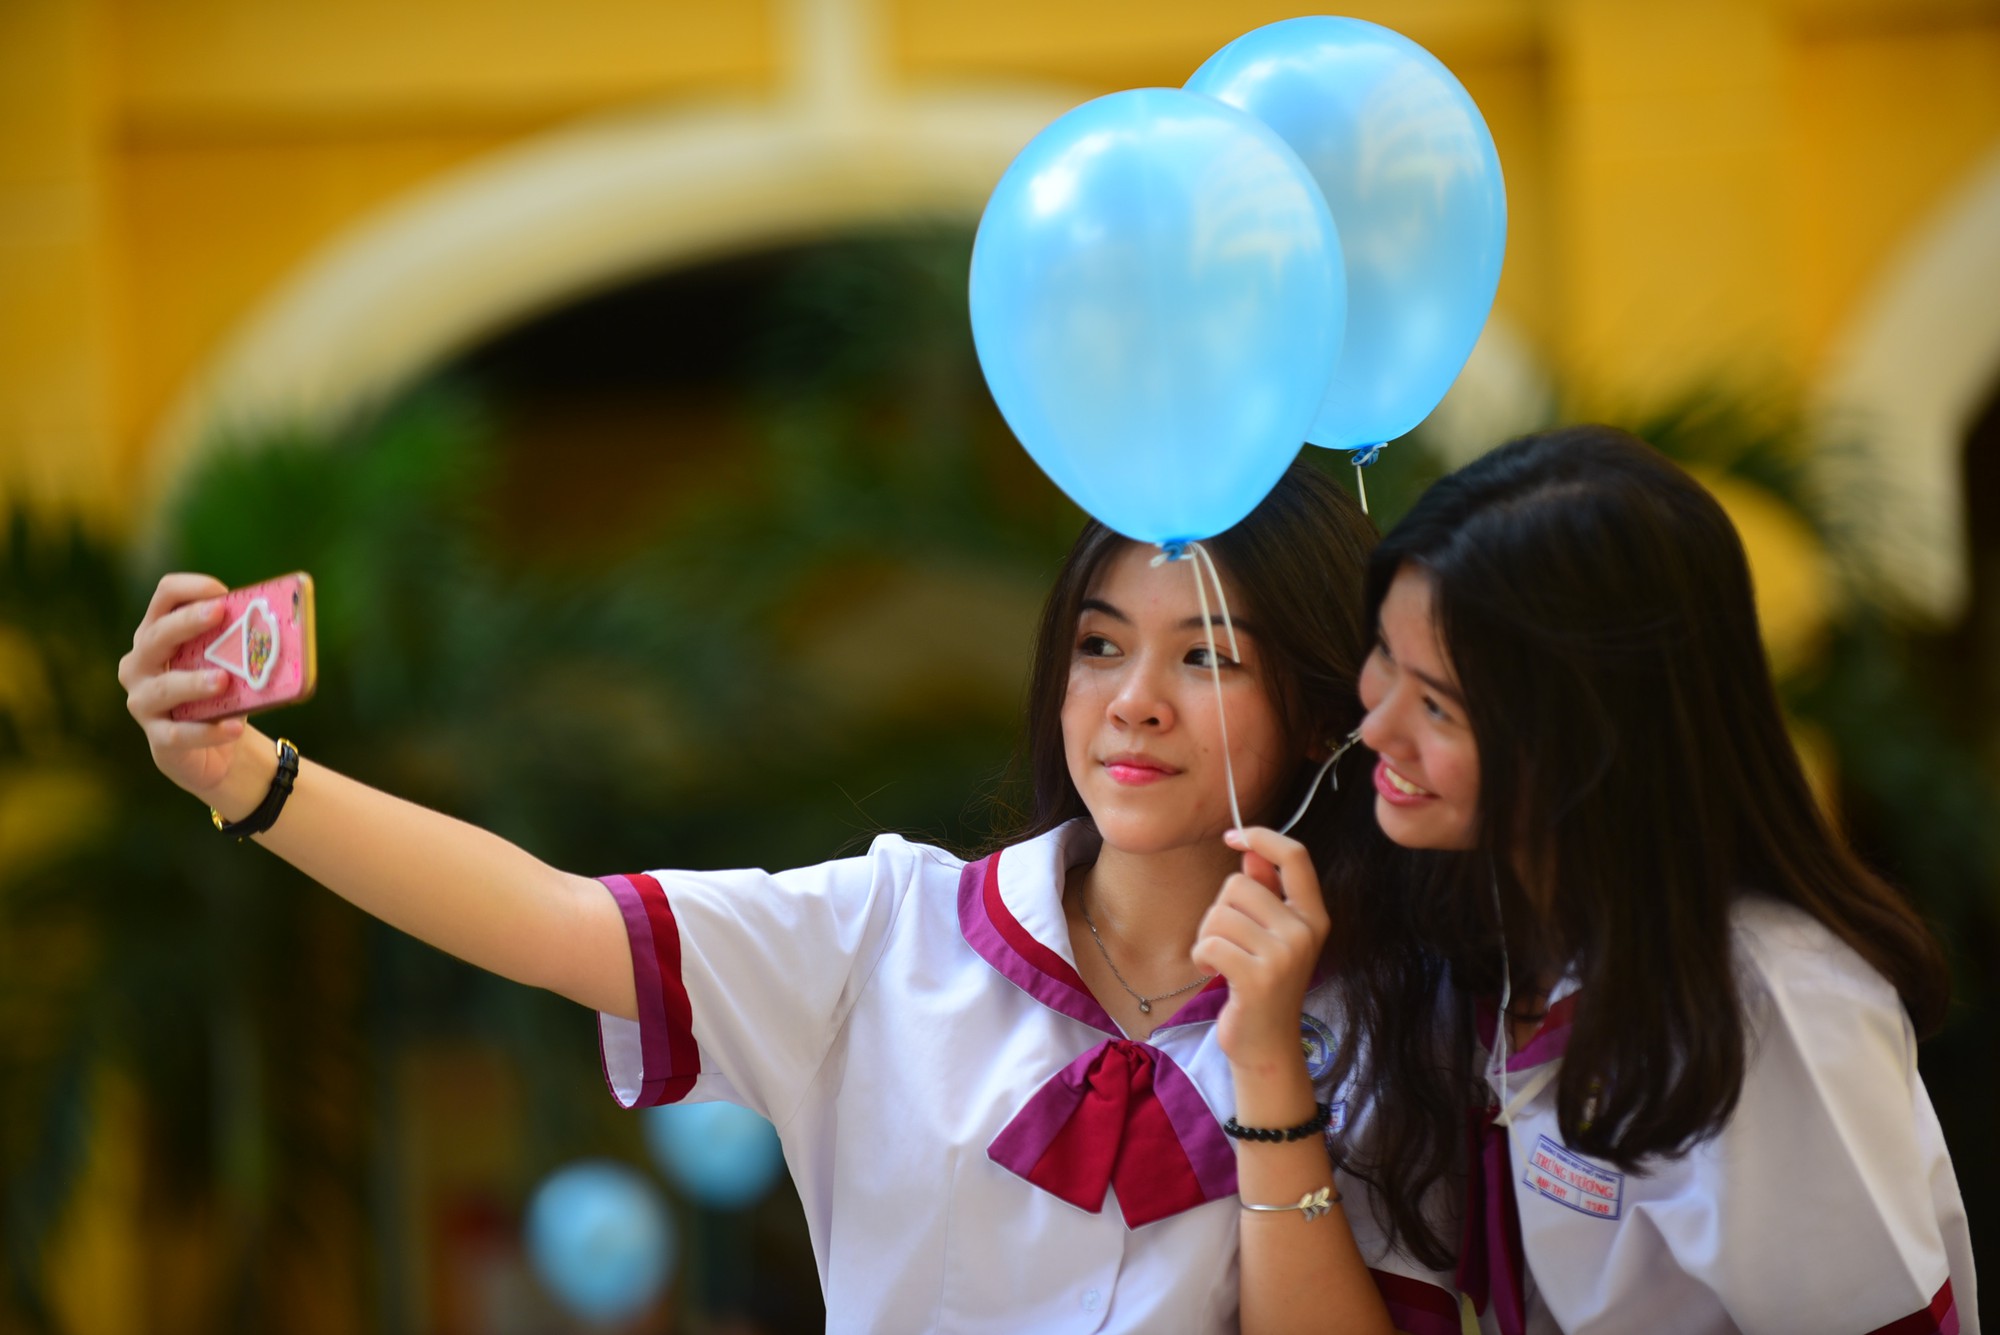 Nước mắt, nụ cười tràn ngập trong lễ trưởng thành của học sinh Sài Gòn - Ảnh 11.